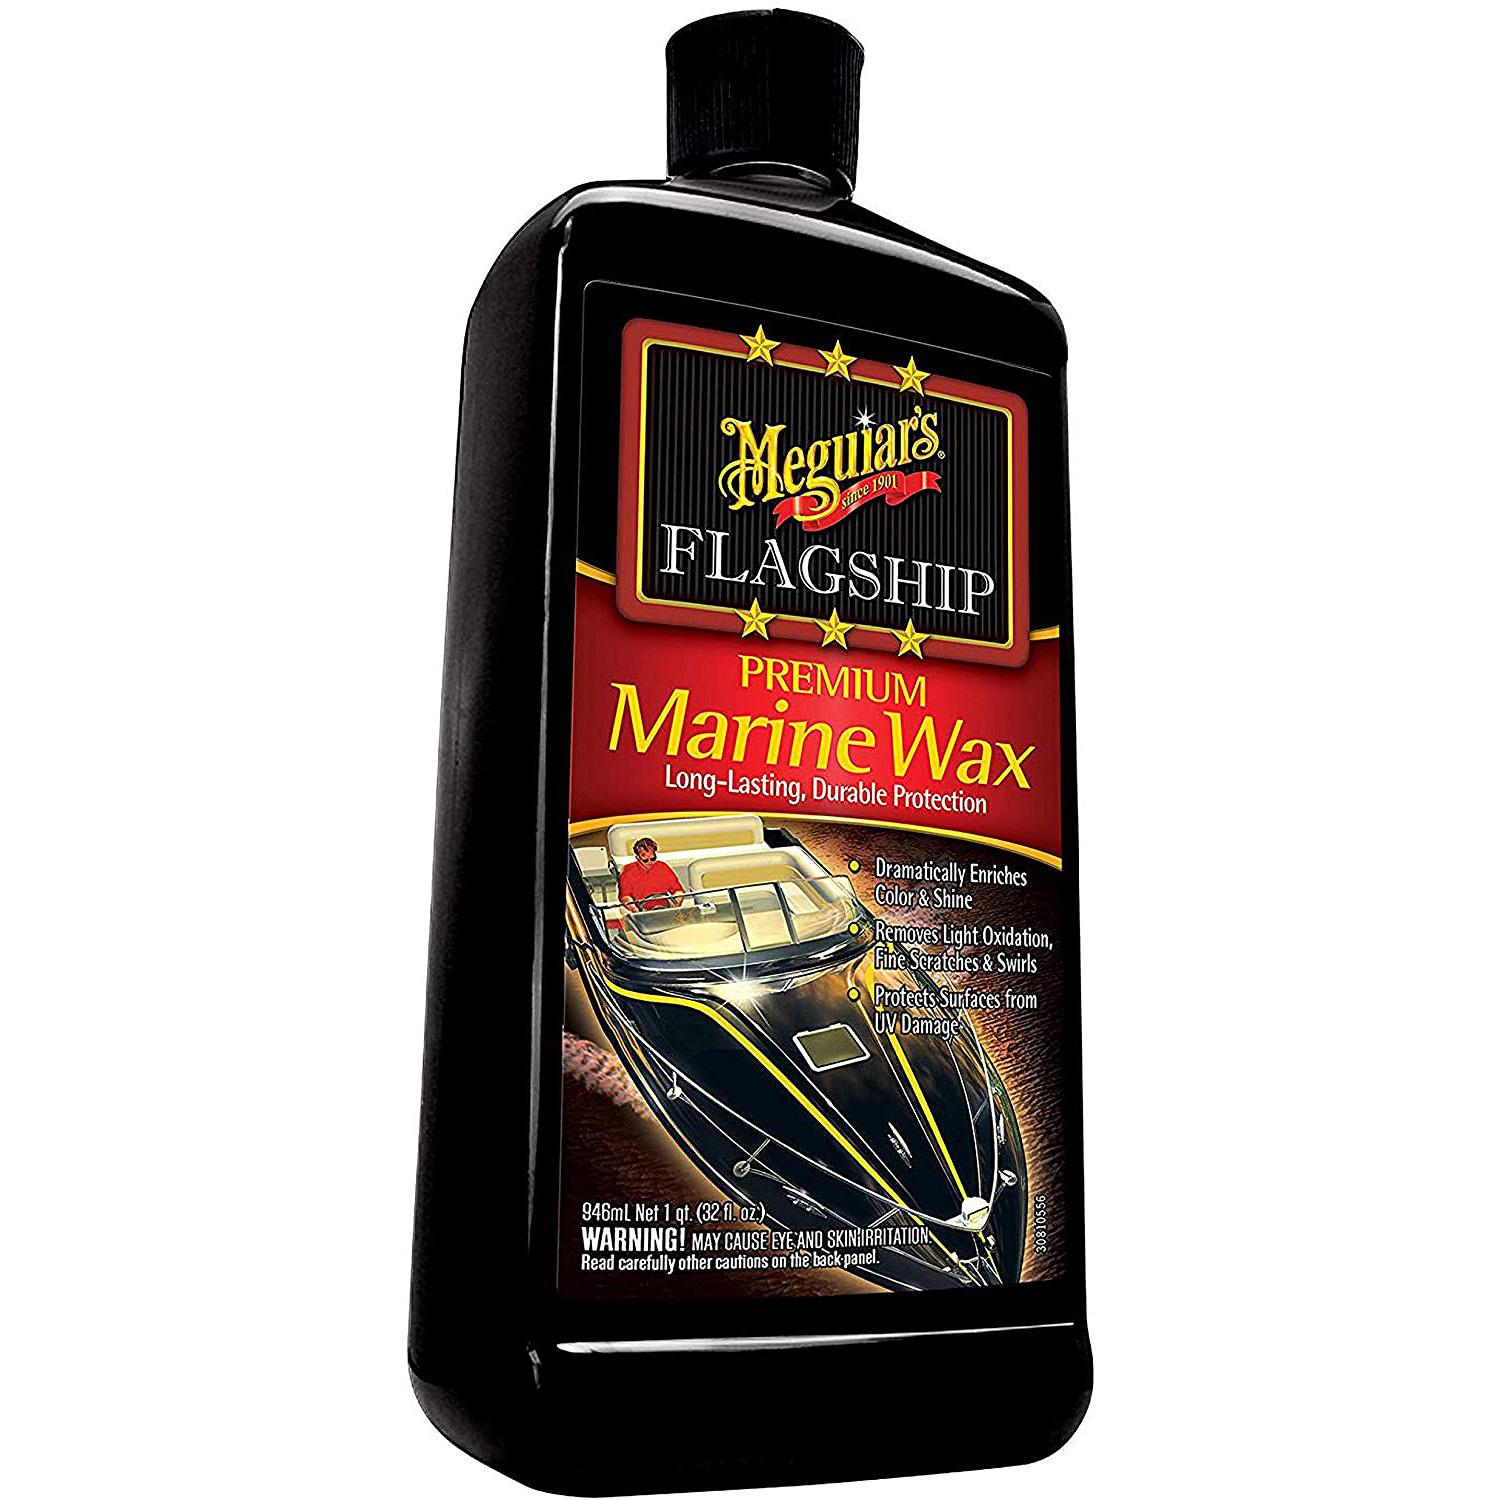 Meguiars M6332 Flagship Premium Marine Wax for $8.52